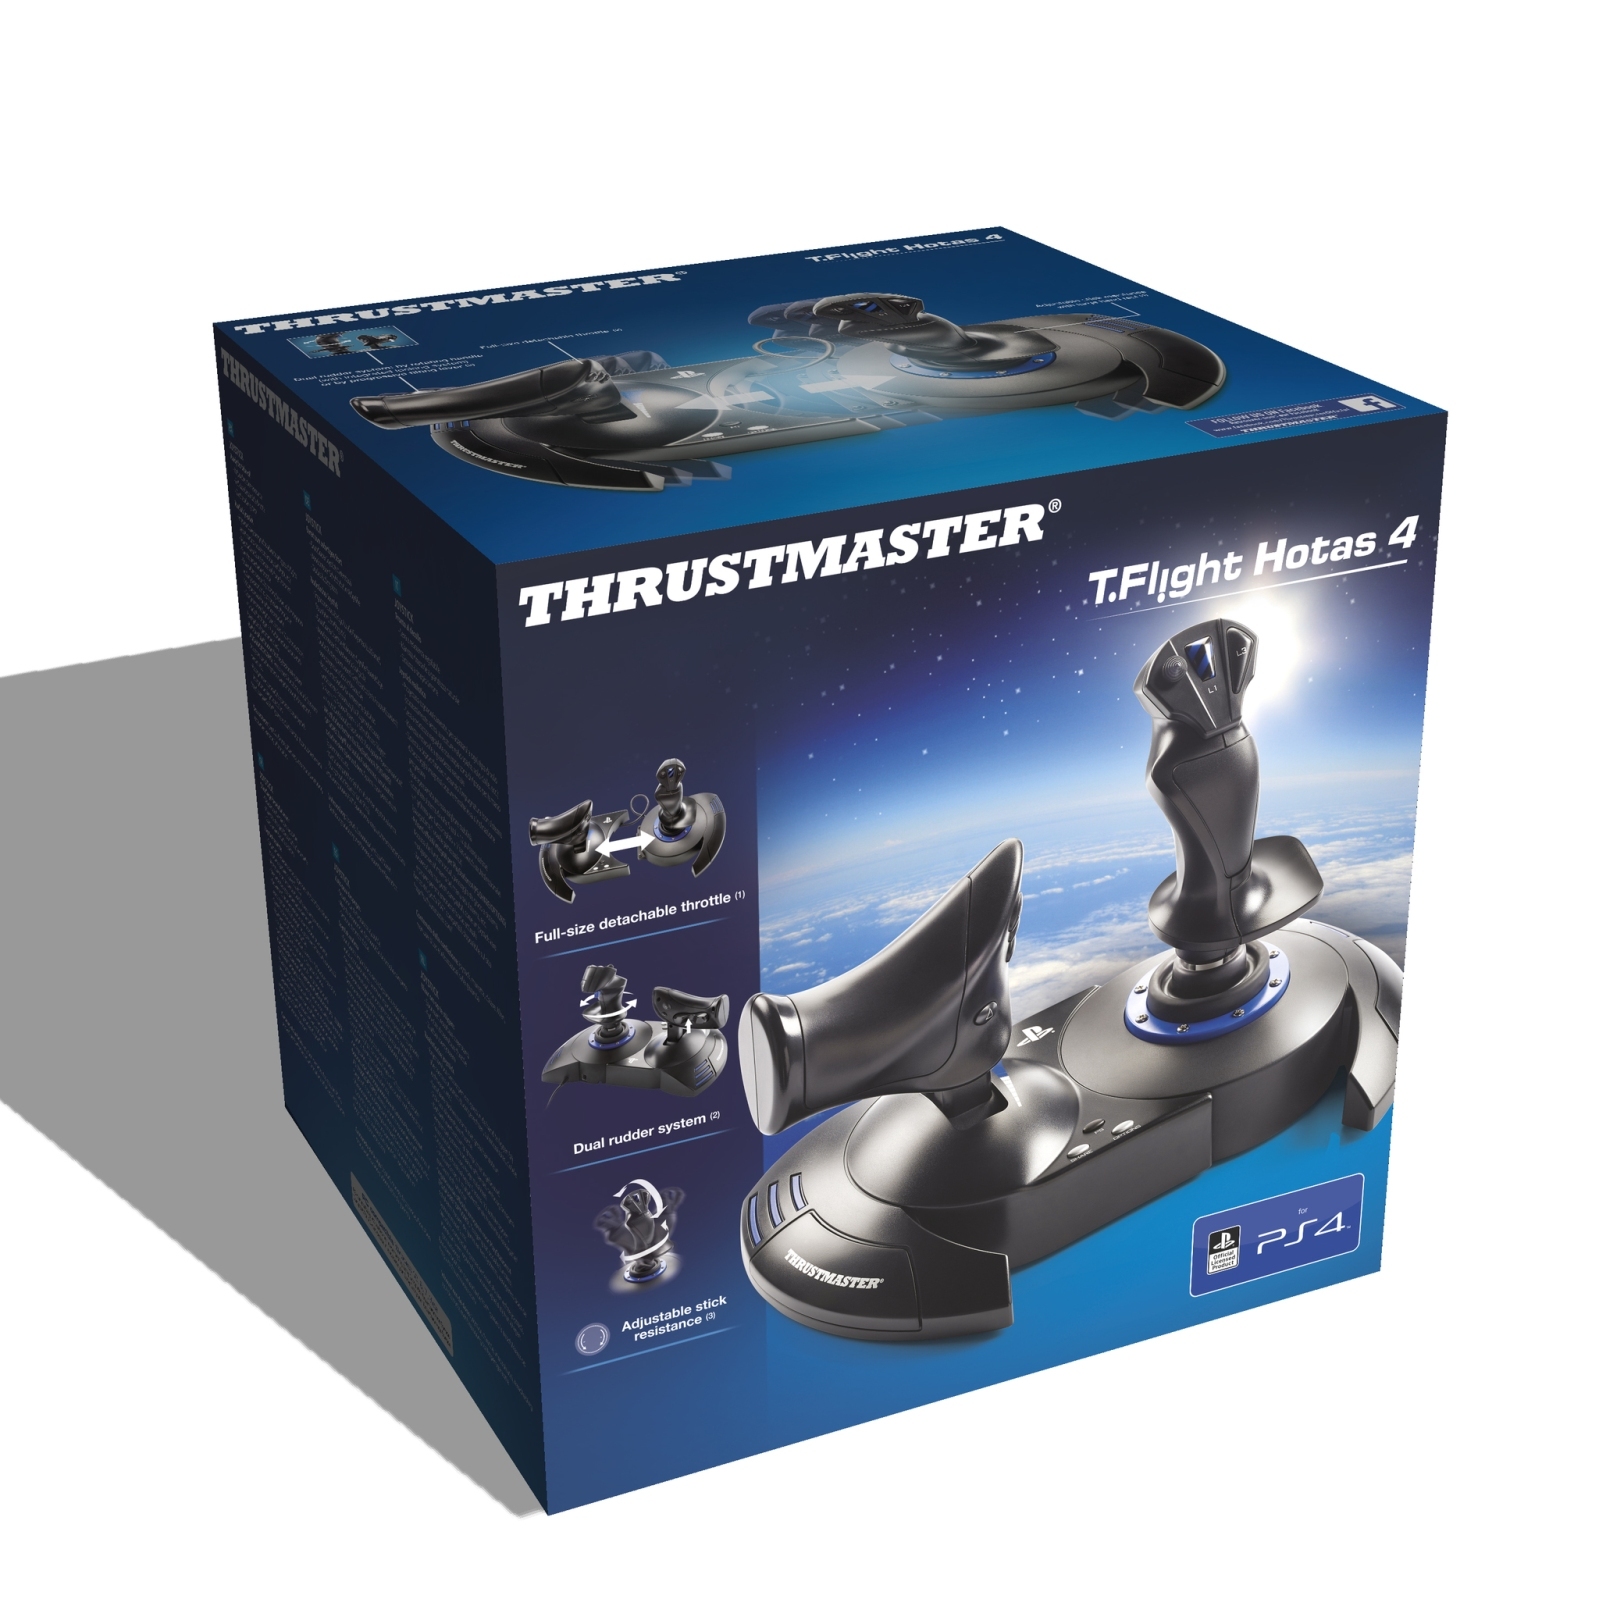 Проводной Джойстик Thrustmaster T-Flight Hotas 4 official EMEA, для PS4,  PC, ПК, геймпад, контроллер | Электроника | АлиЭкспресс